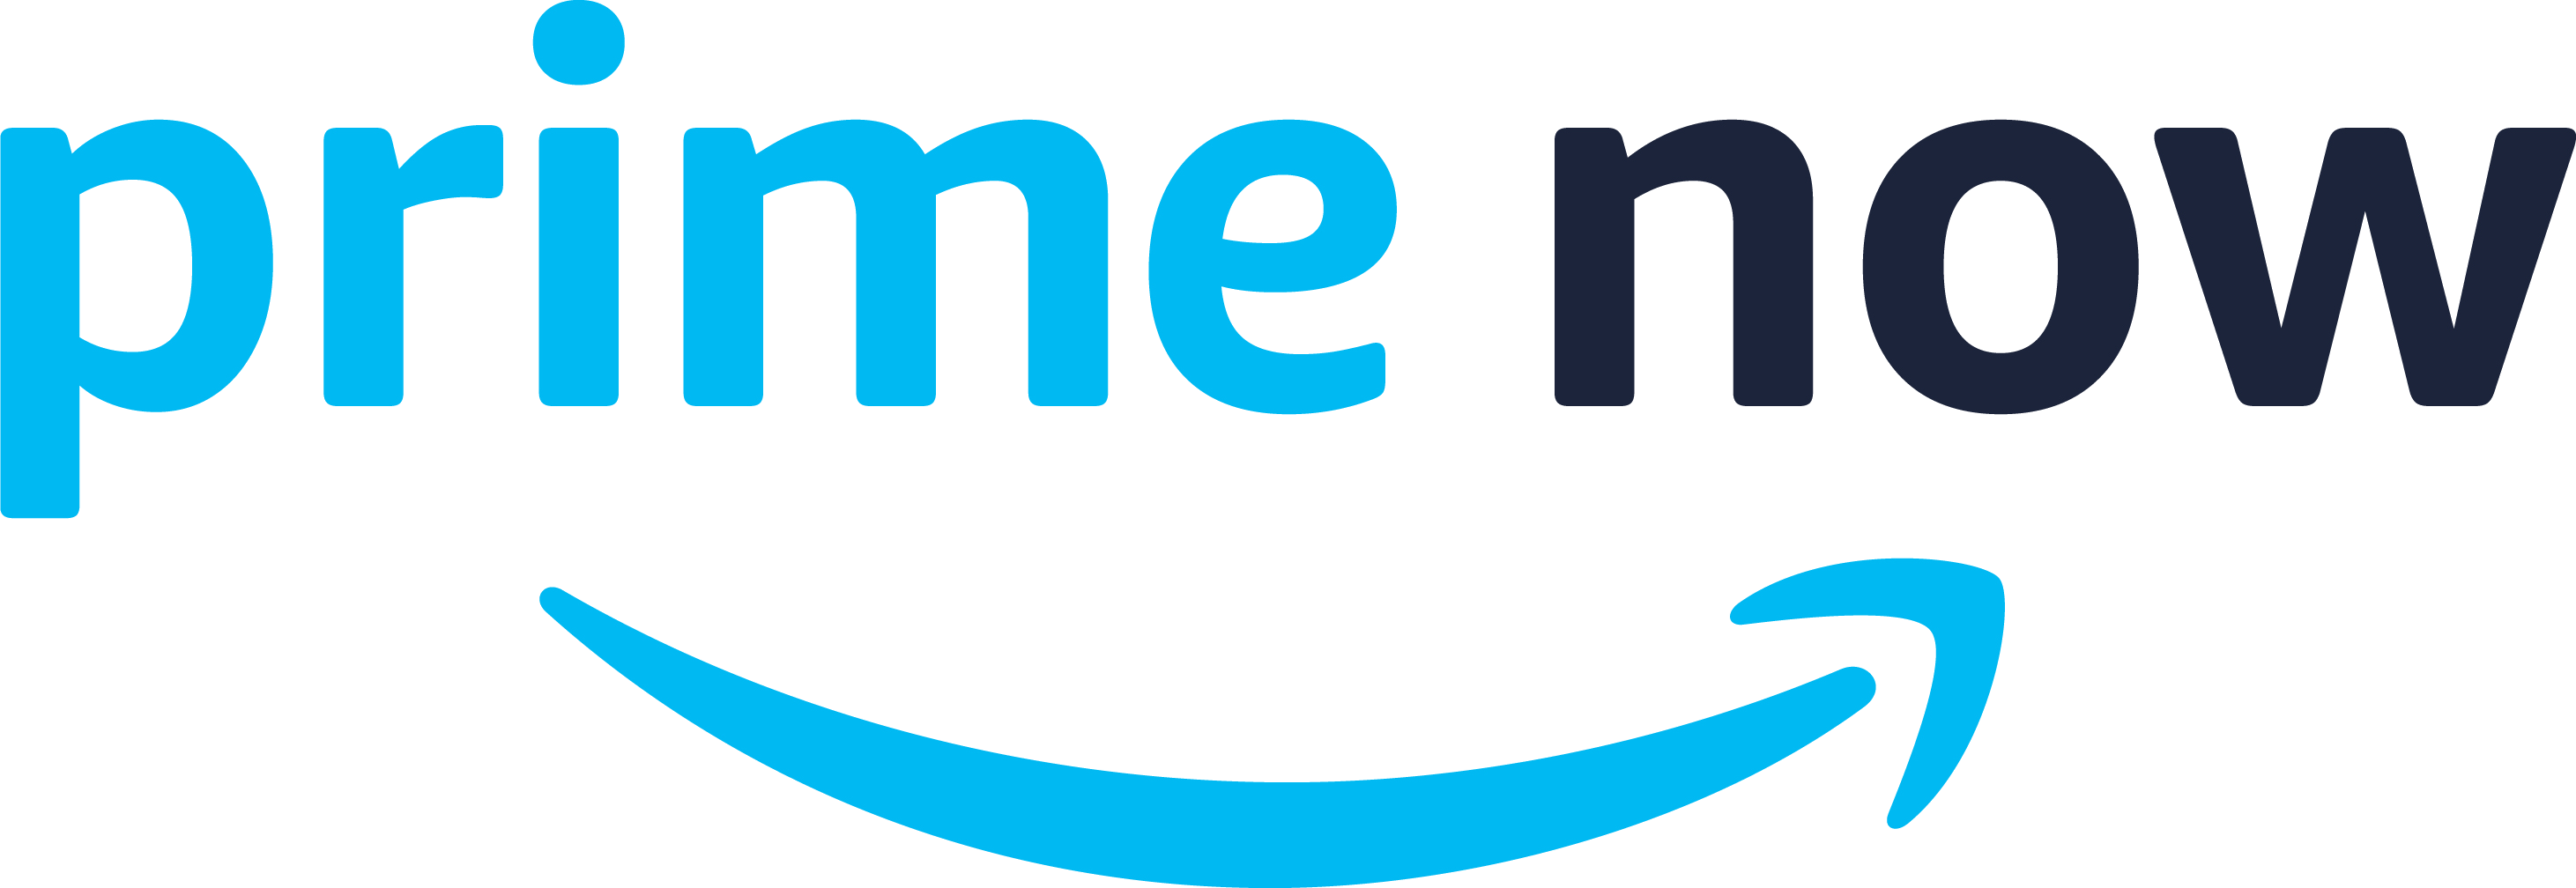 Amazon Prime Now logo